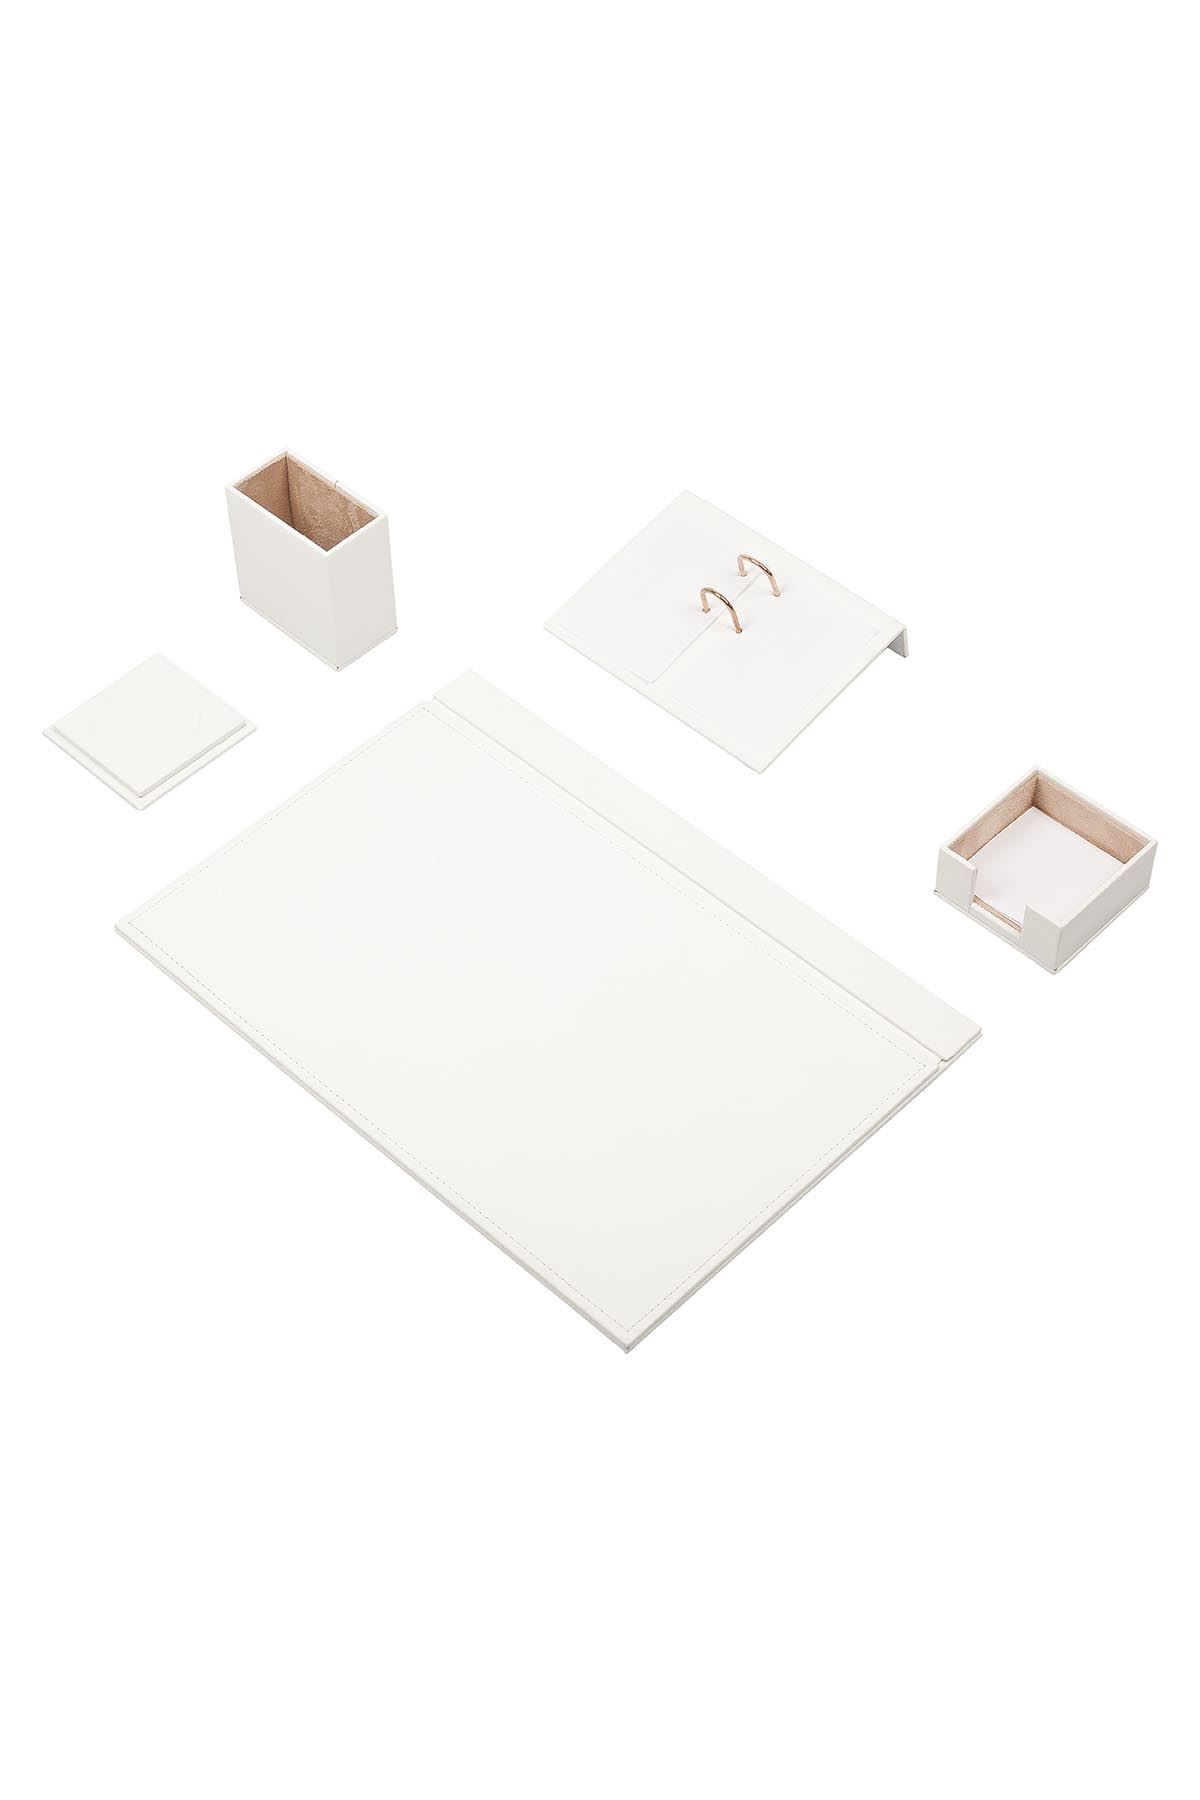 Leather Desk Set 5 Accessories White